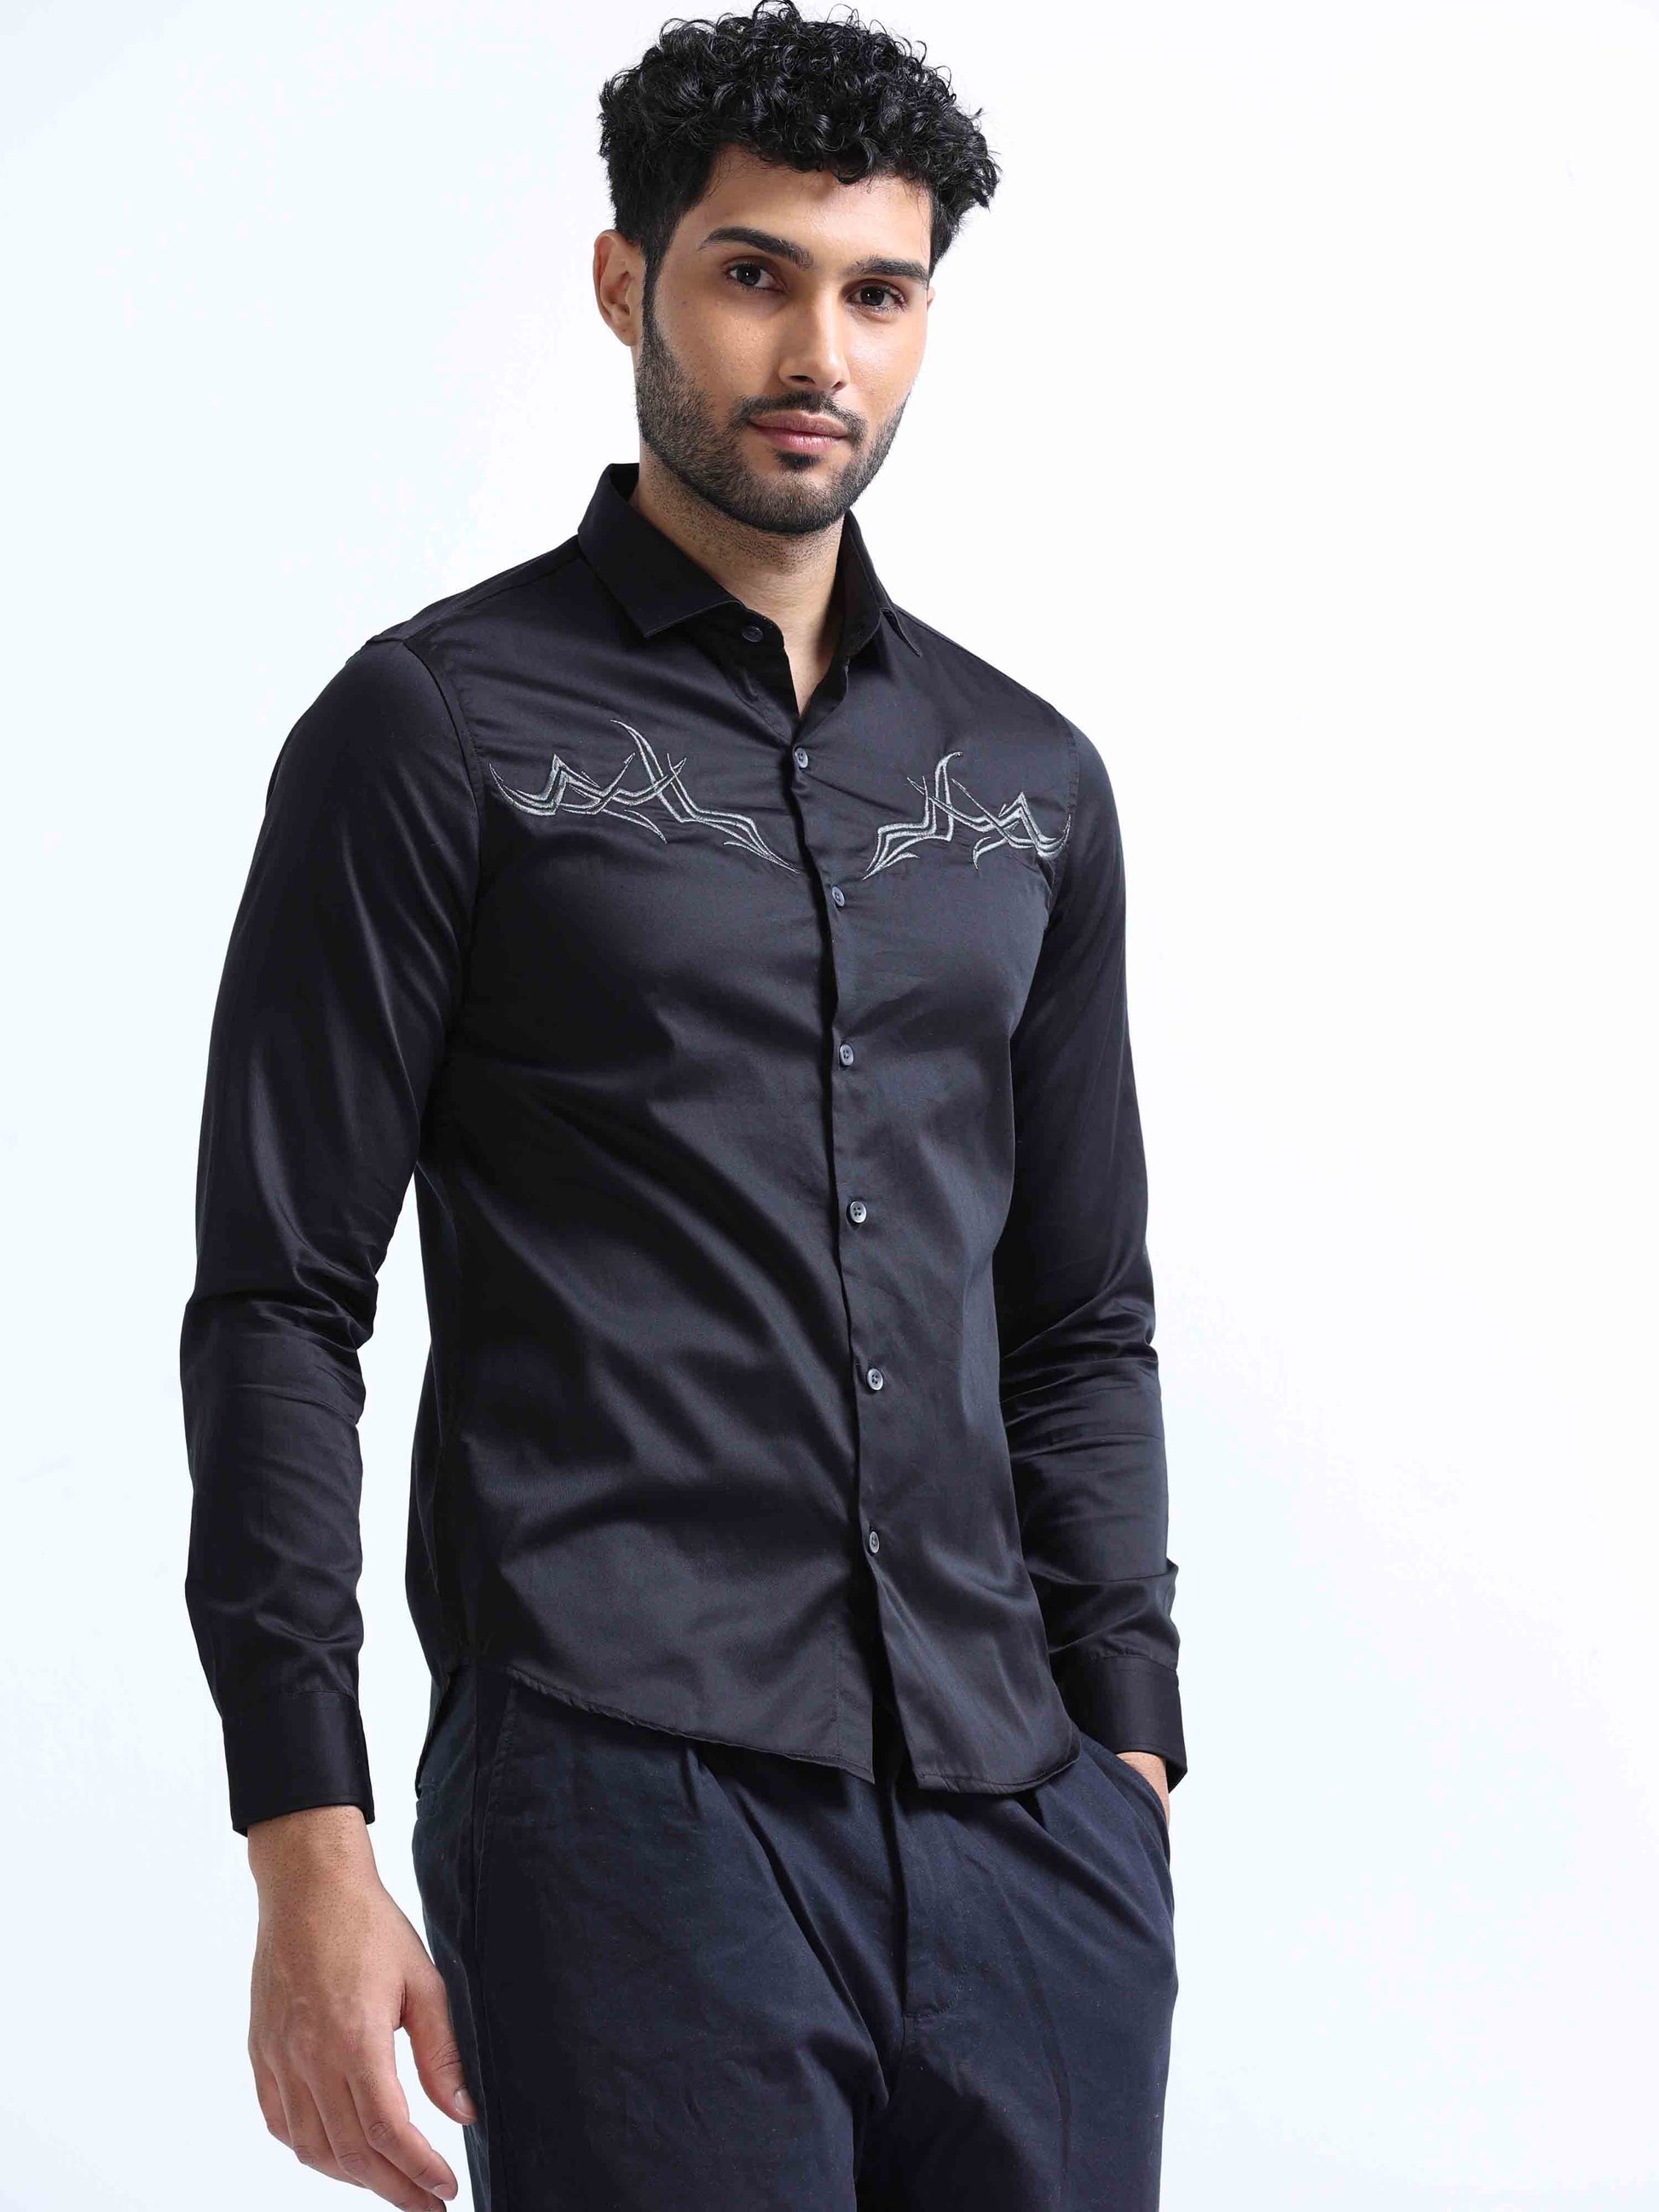 Black Full Sleeve Shirt For Men